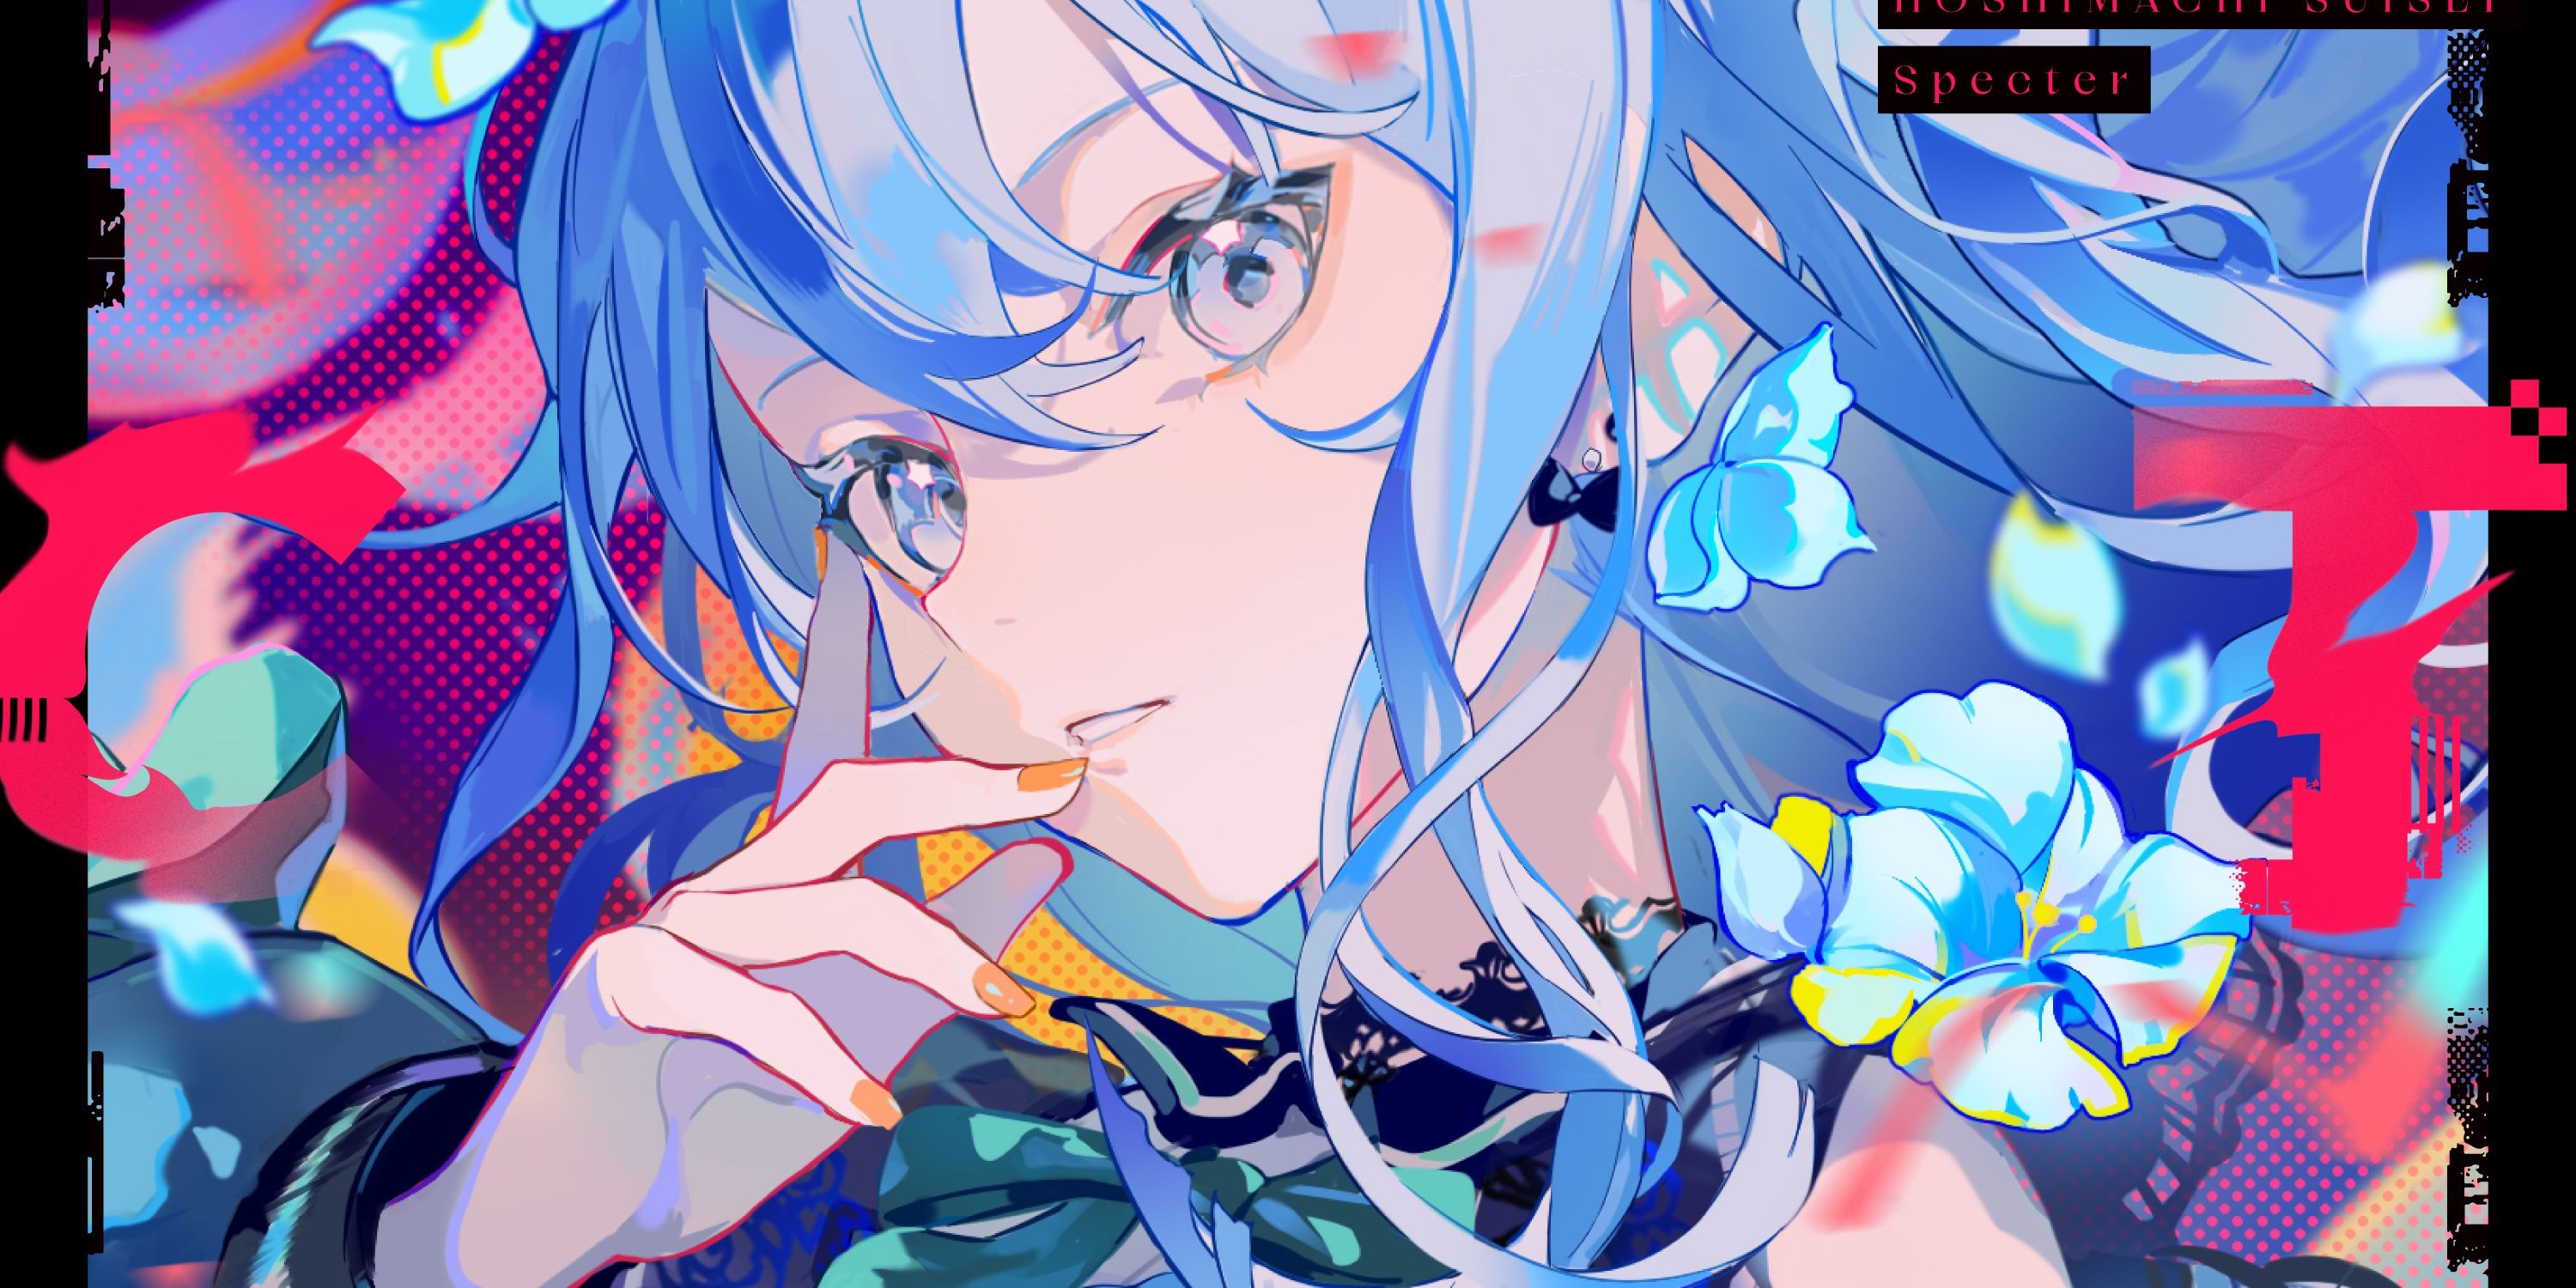 Imagen tomada del álbum de Suisei, "Espectro"que la representa rodeada de flores azules mientras se lleva una mano a la cara y mira la pantalla.